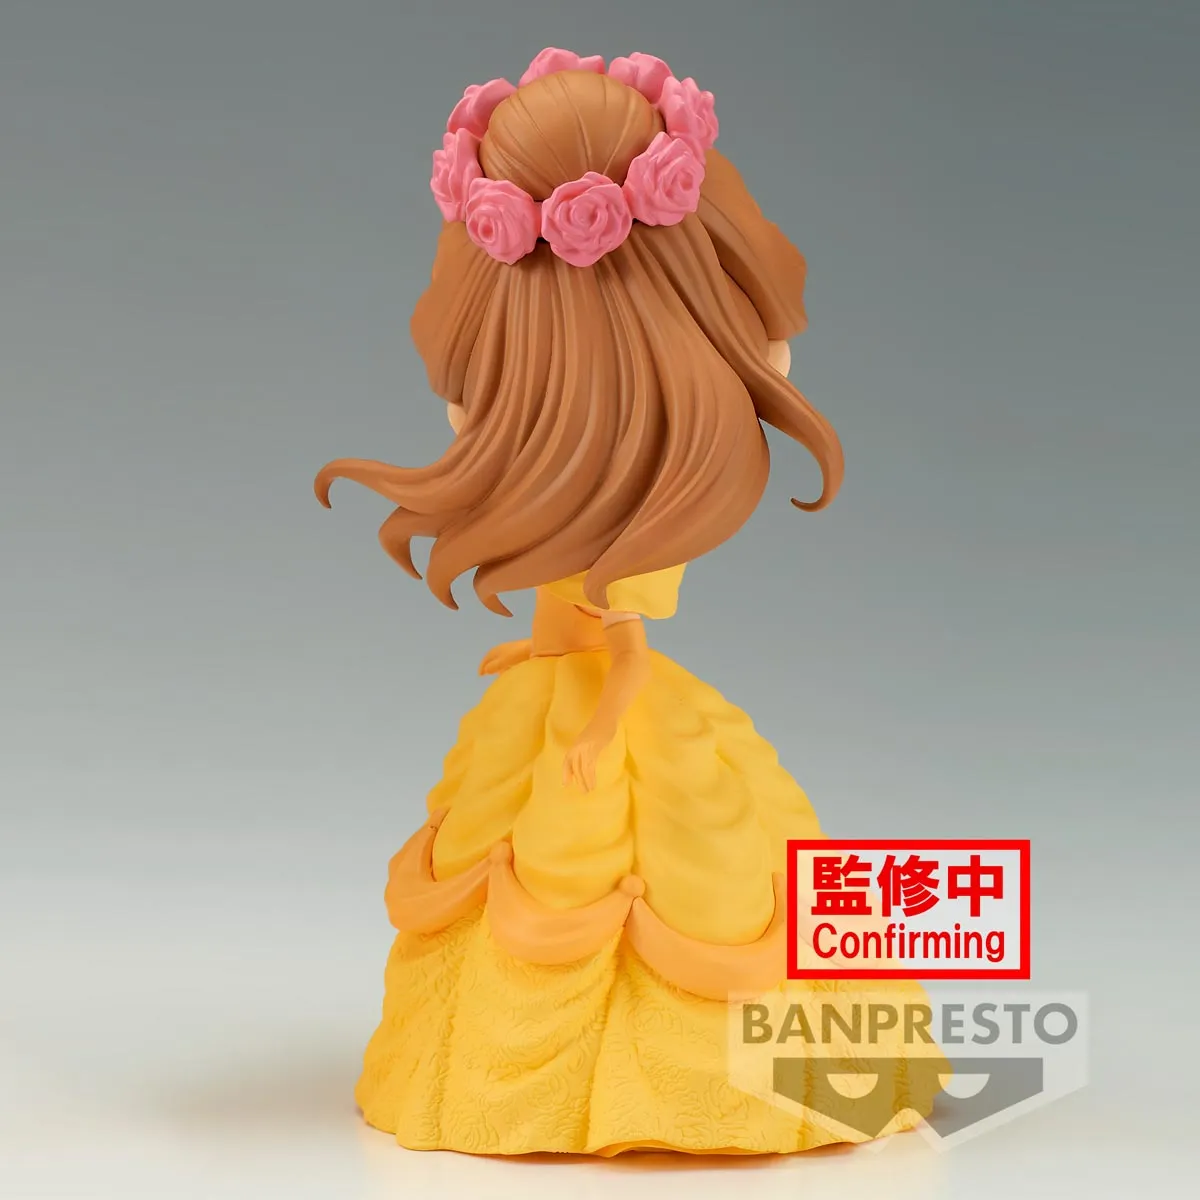 Pre-Order Flower Style - Belle (ver. B) "Disney Characters"